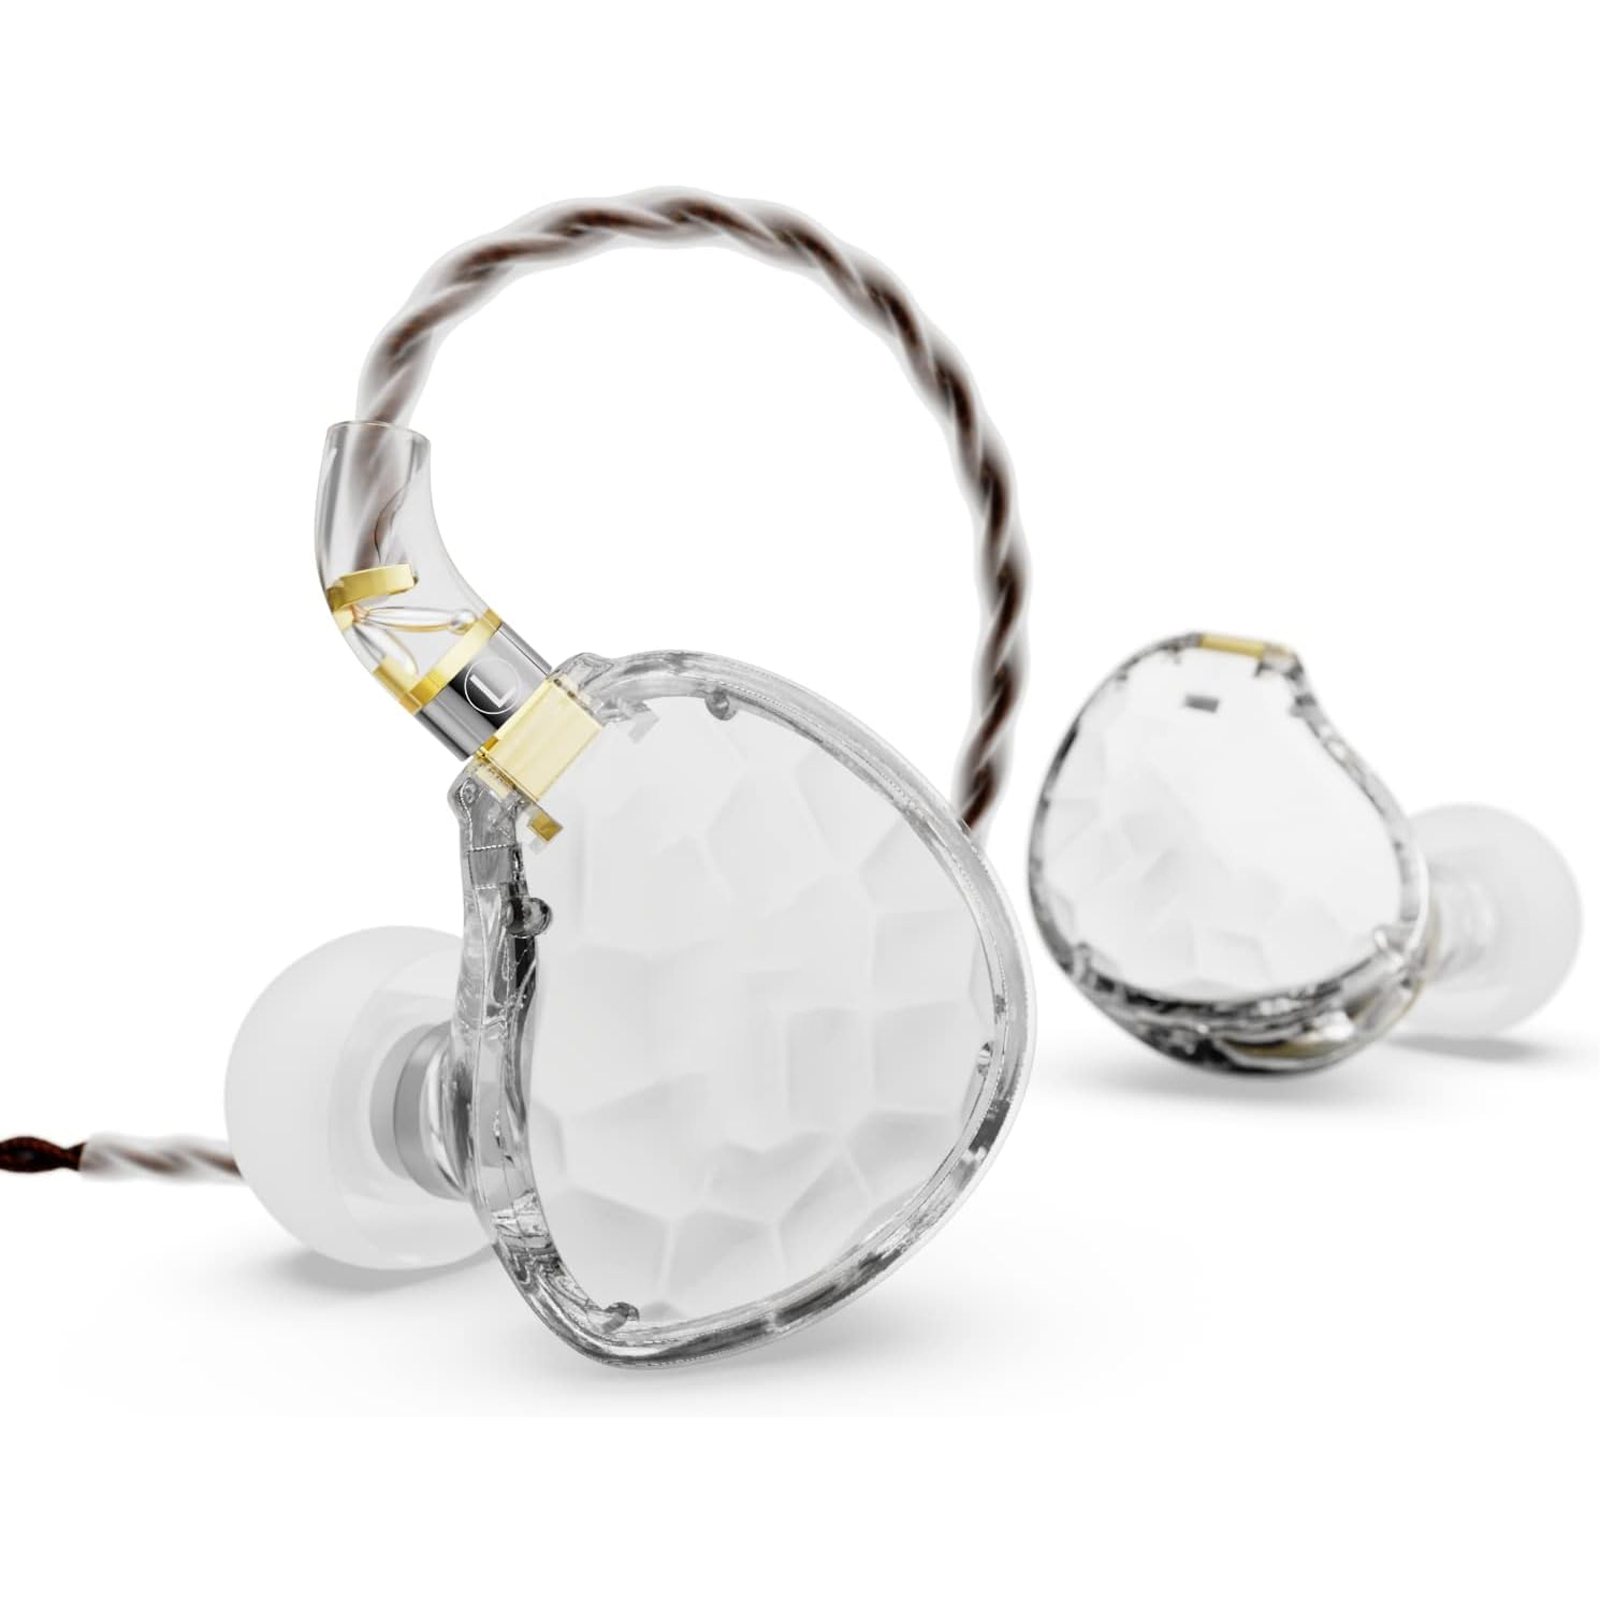 BASN ASONE 14.2mm Planar Diaphragm Driver in-Ear Monitors Earphone(1)